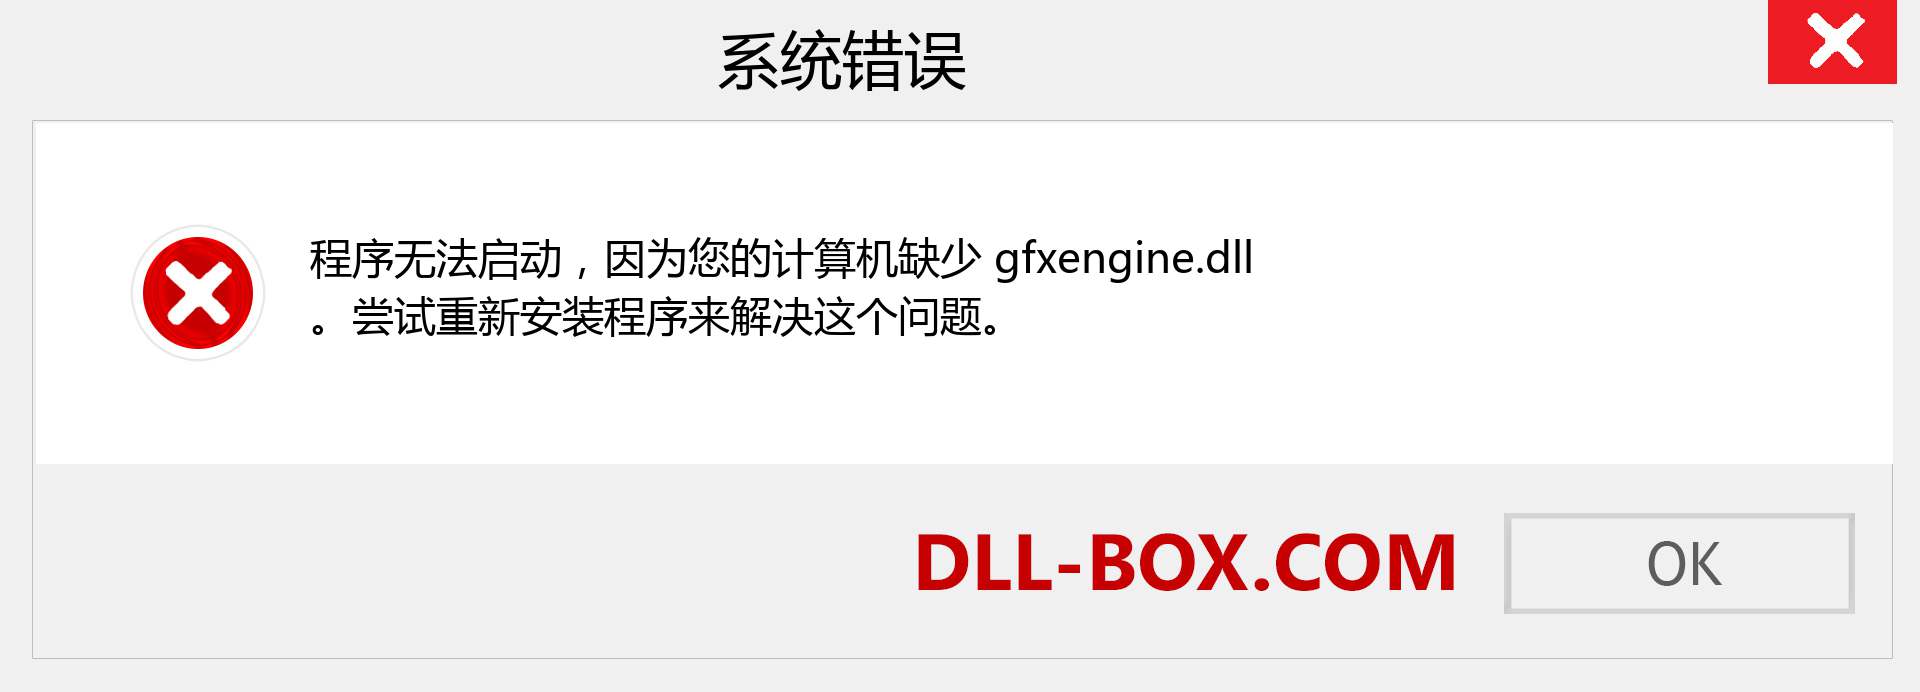 gfxengine.dll 文件丢失？。 适用于 Windows 7、8、10 的下载 - 修复 Windows、照片、图像上的 gfxengine dll 丢失错误